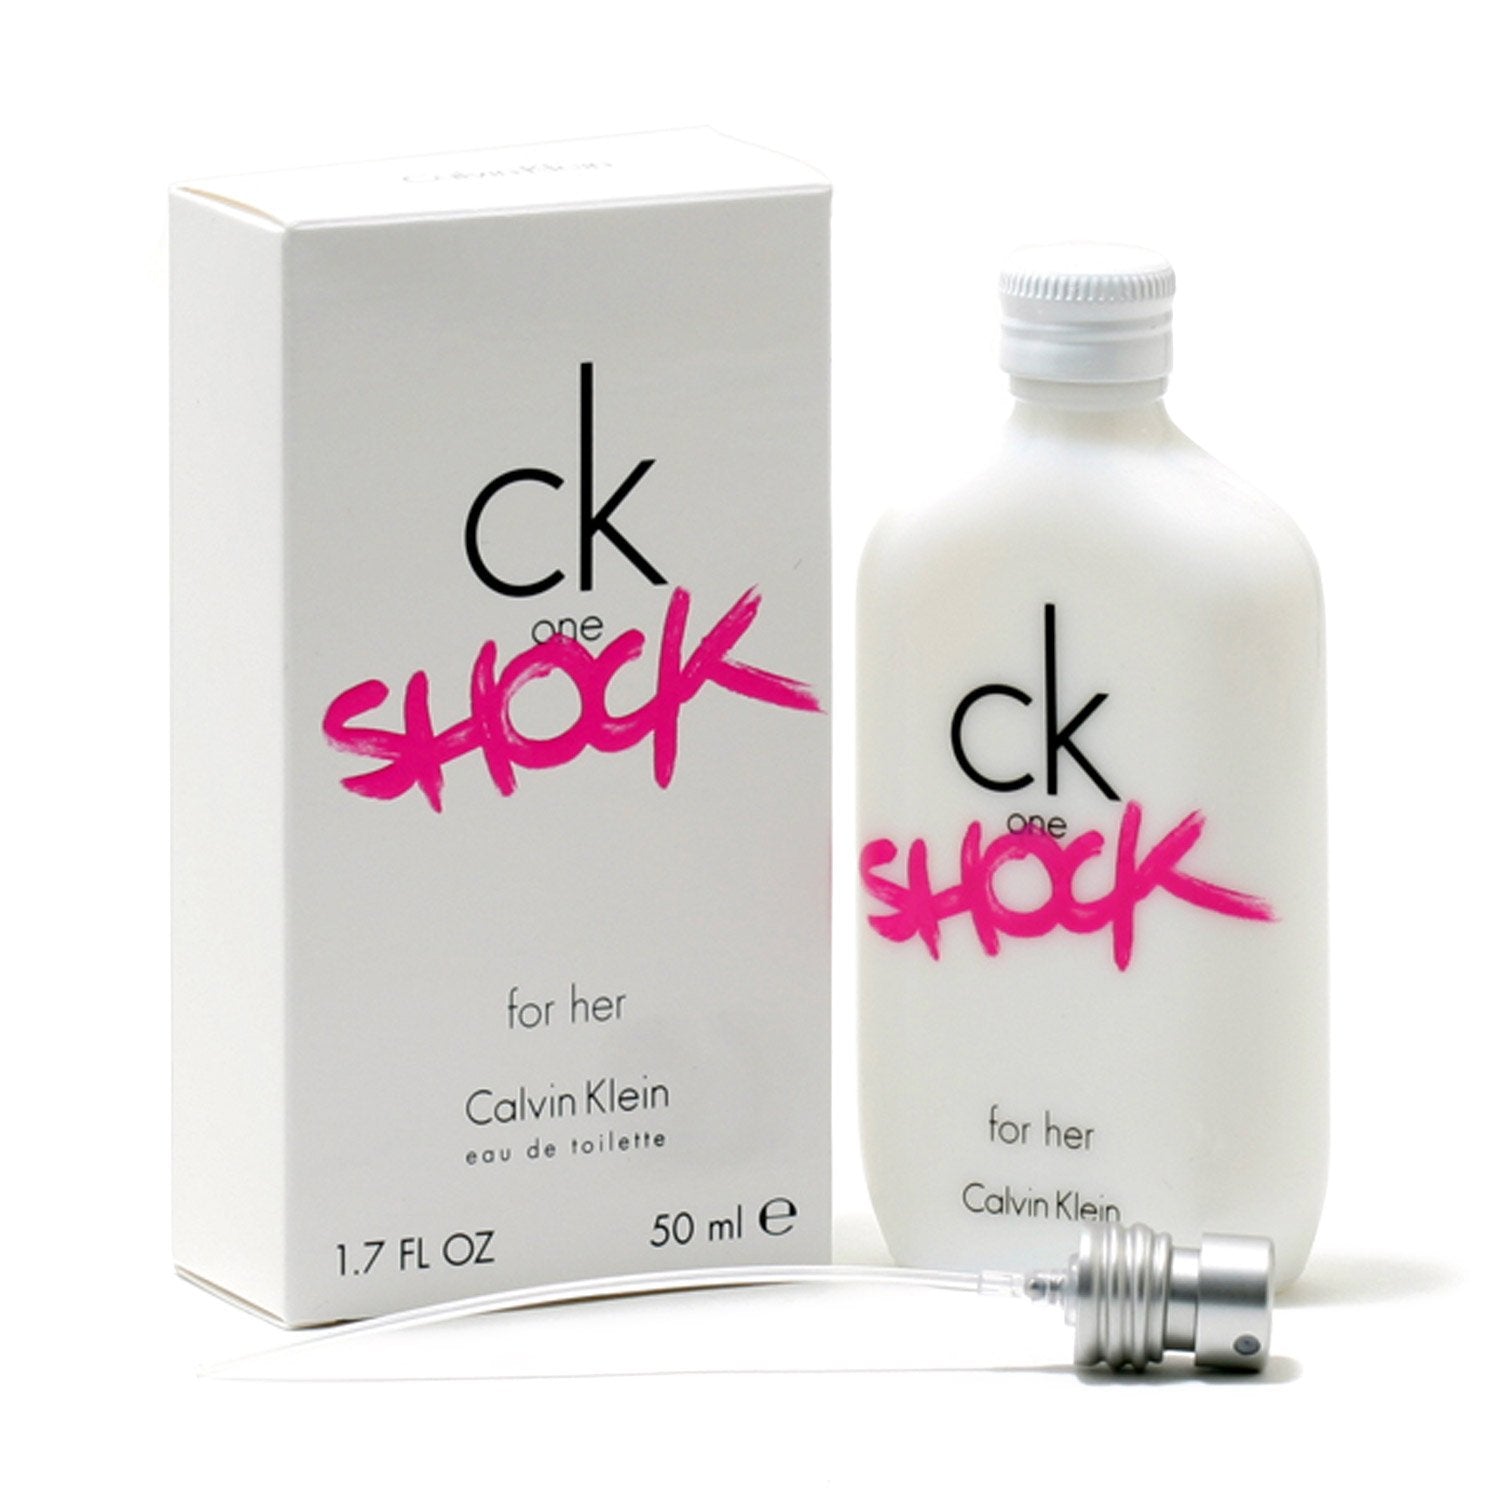 - Fragrance – SPRAY TOILETTE WOMEN Room SHOCK KLEIN CALVIN CK BY FOR ONE DE EAU